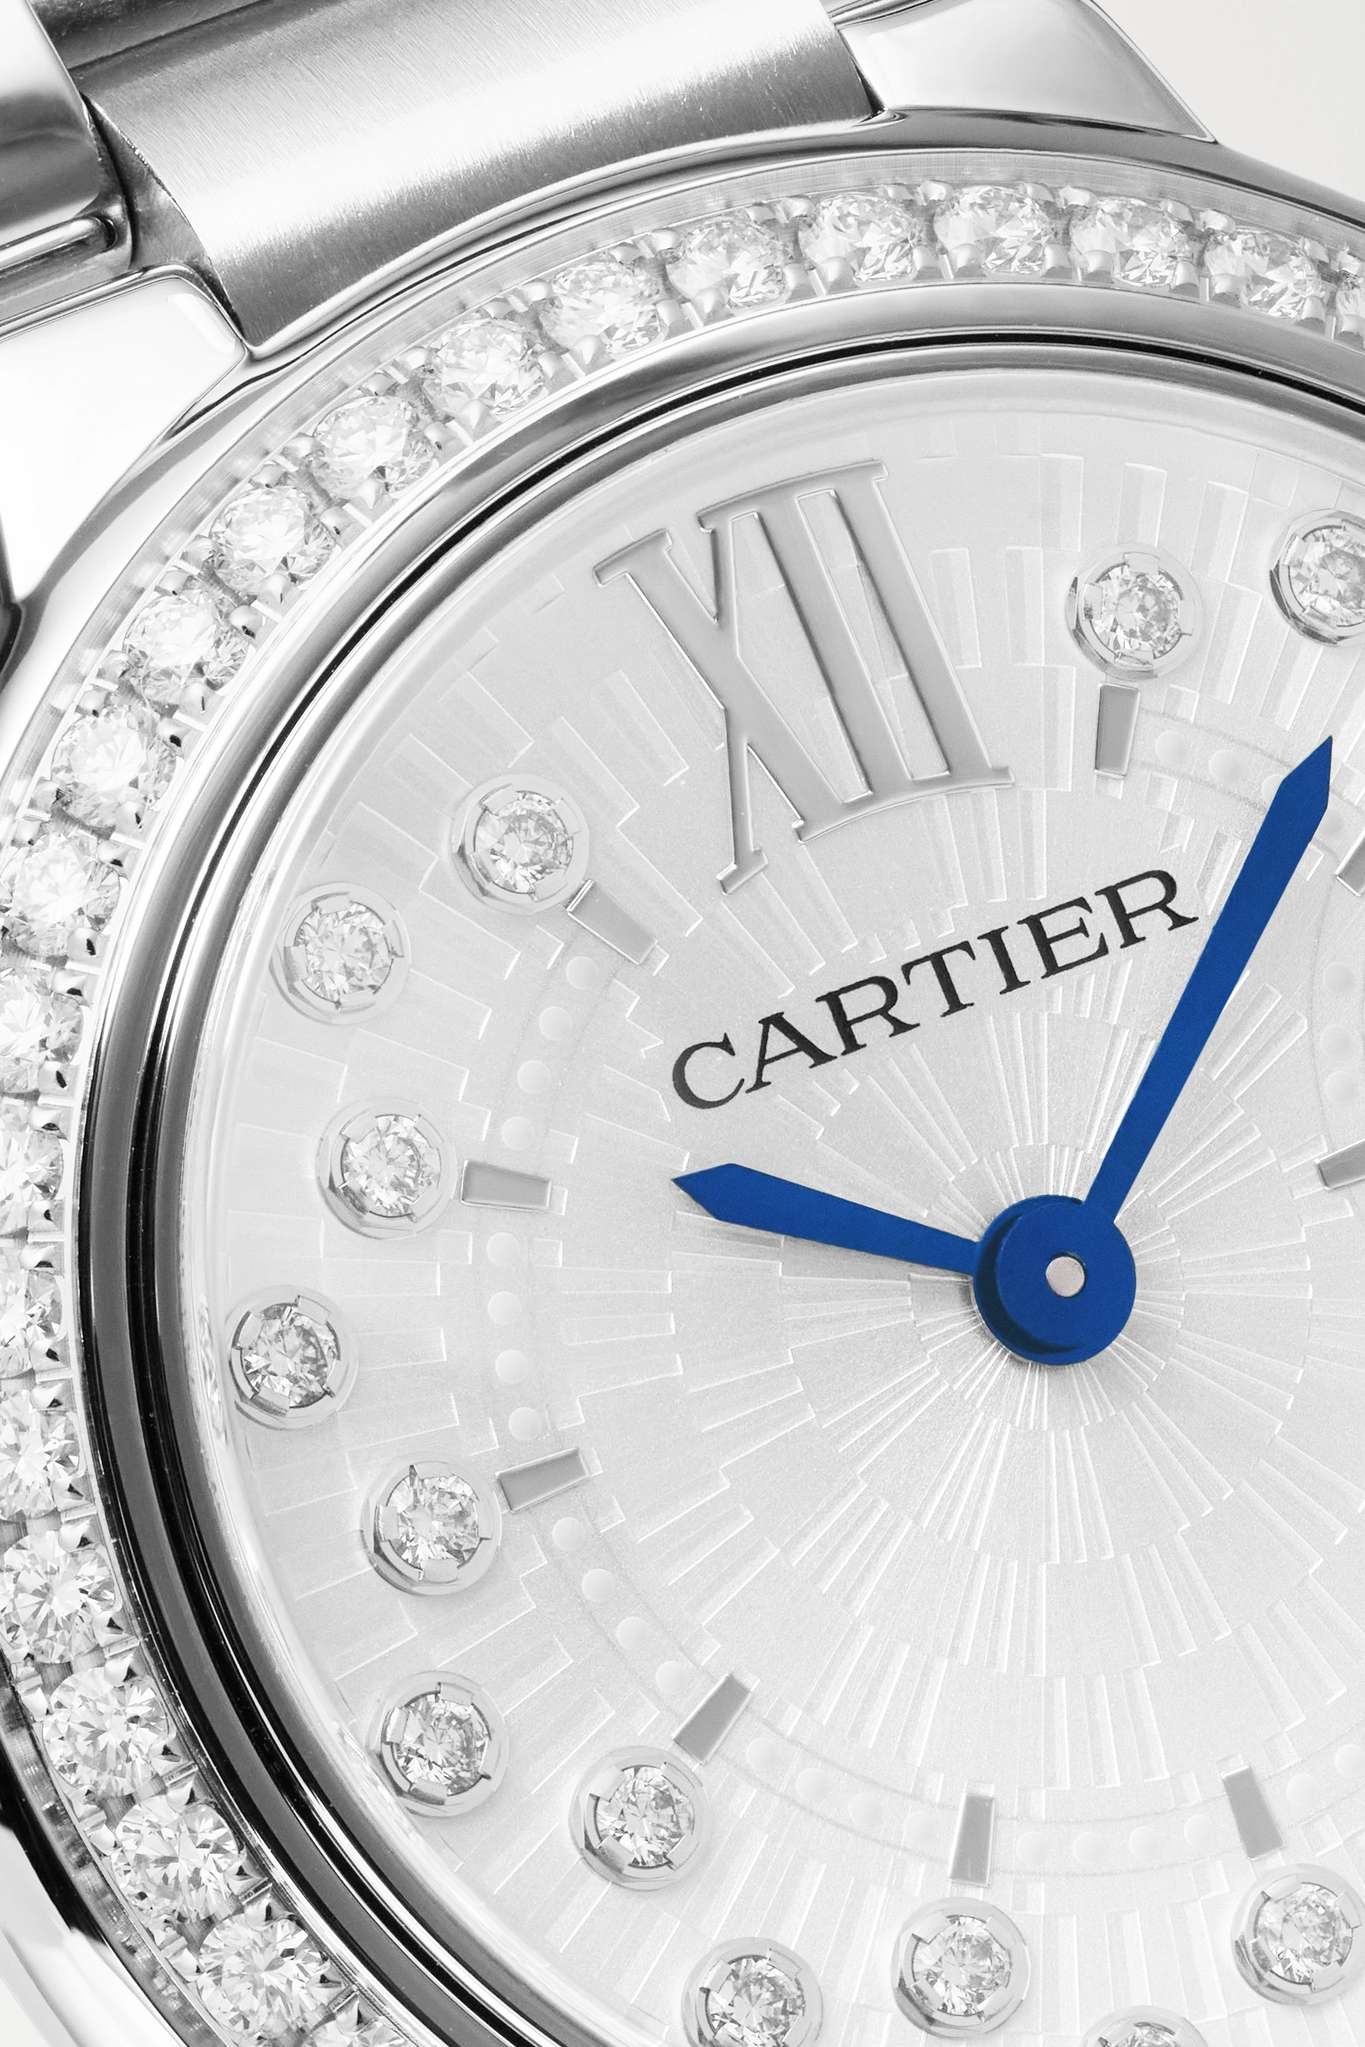 Ballon Bleu de Cartier 28mm stainless steel and diamond watch - 5